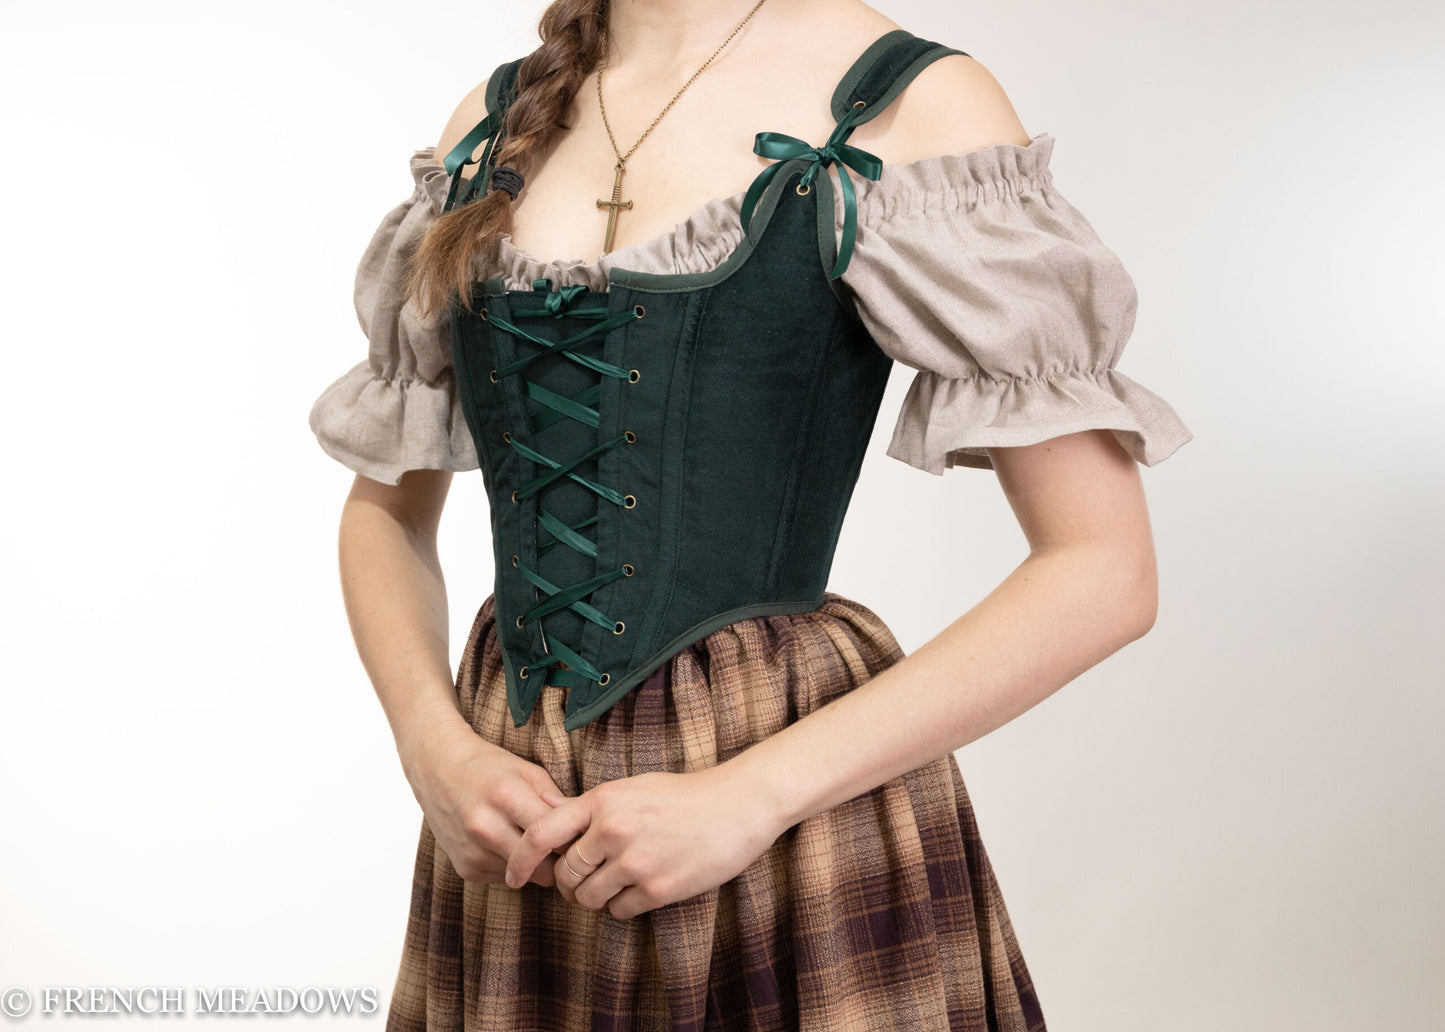 Renaissance Clothing  renaissance corset dress 3 10 from 72 votes